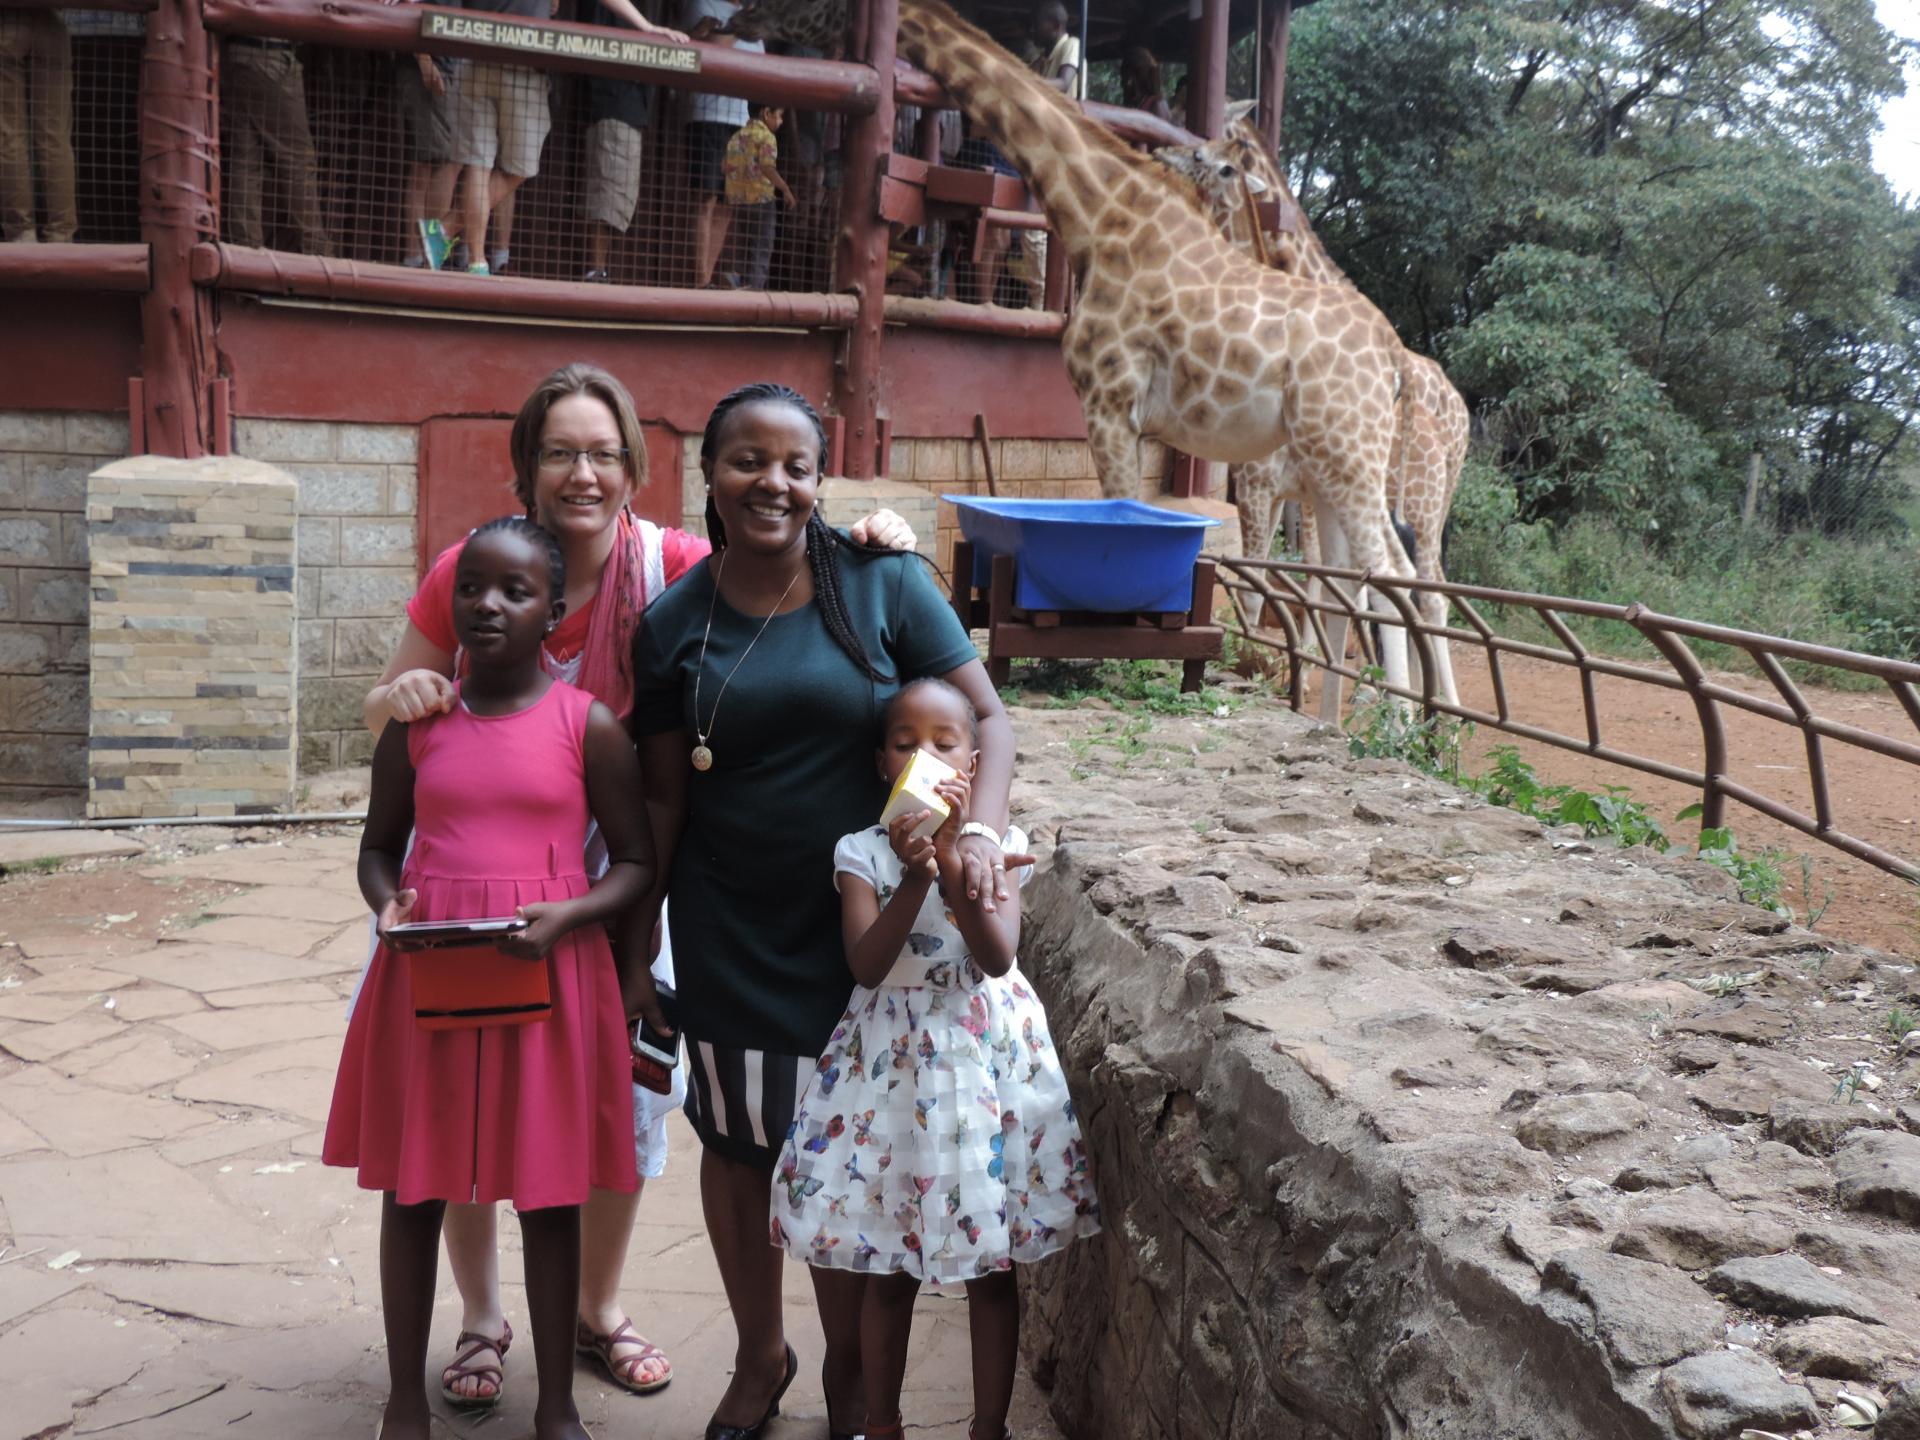 Kenya Short Tours,Yha kenya travel ,guided nairobi tours, nairobi sight seeing tours, giraffe centre, nairobi excursions.